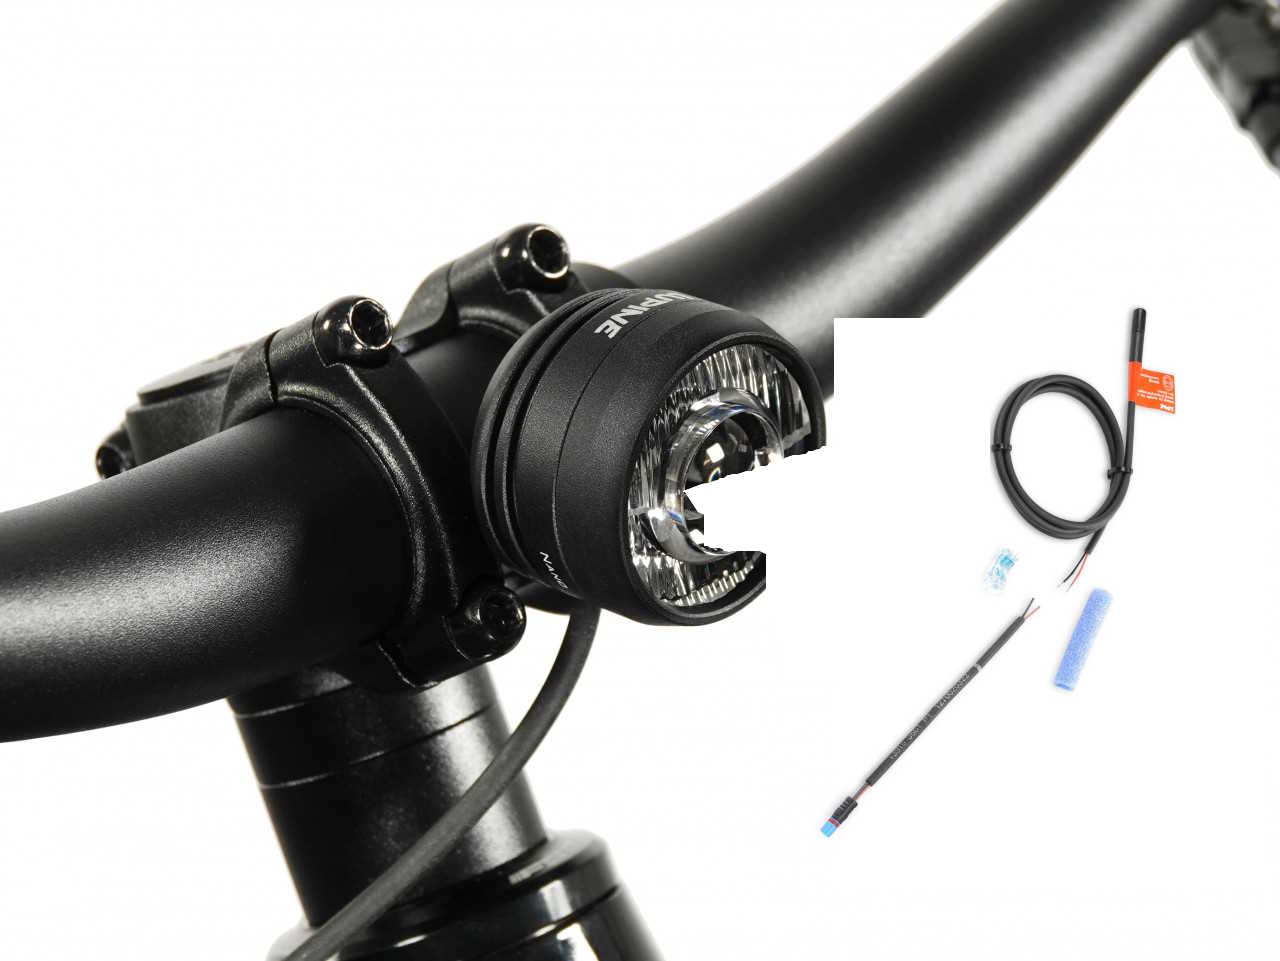 Produktbild von Lupine SL Nano für E-Bikes mit Bosch BES3 Motor, E-Bike Beleuchtung mit 900 Lumen Fernlicht, Lenkerhalter 31,8mm + Kabelfernbedienung